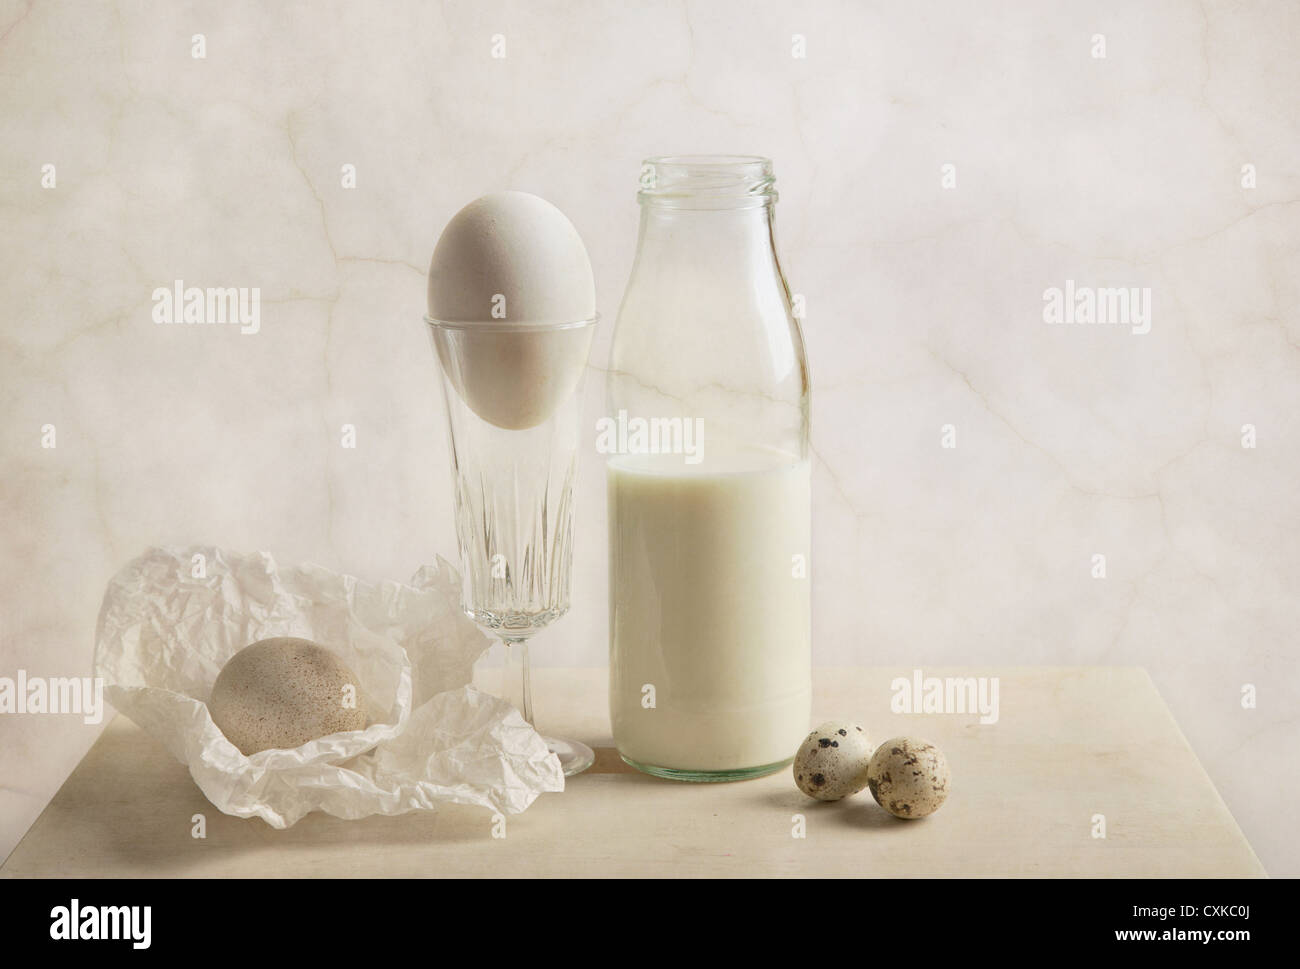 milk and eggs Stock Photo